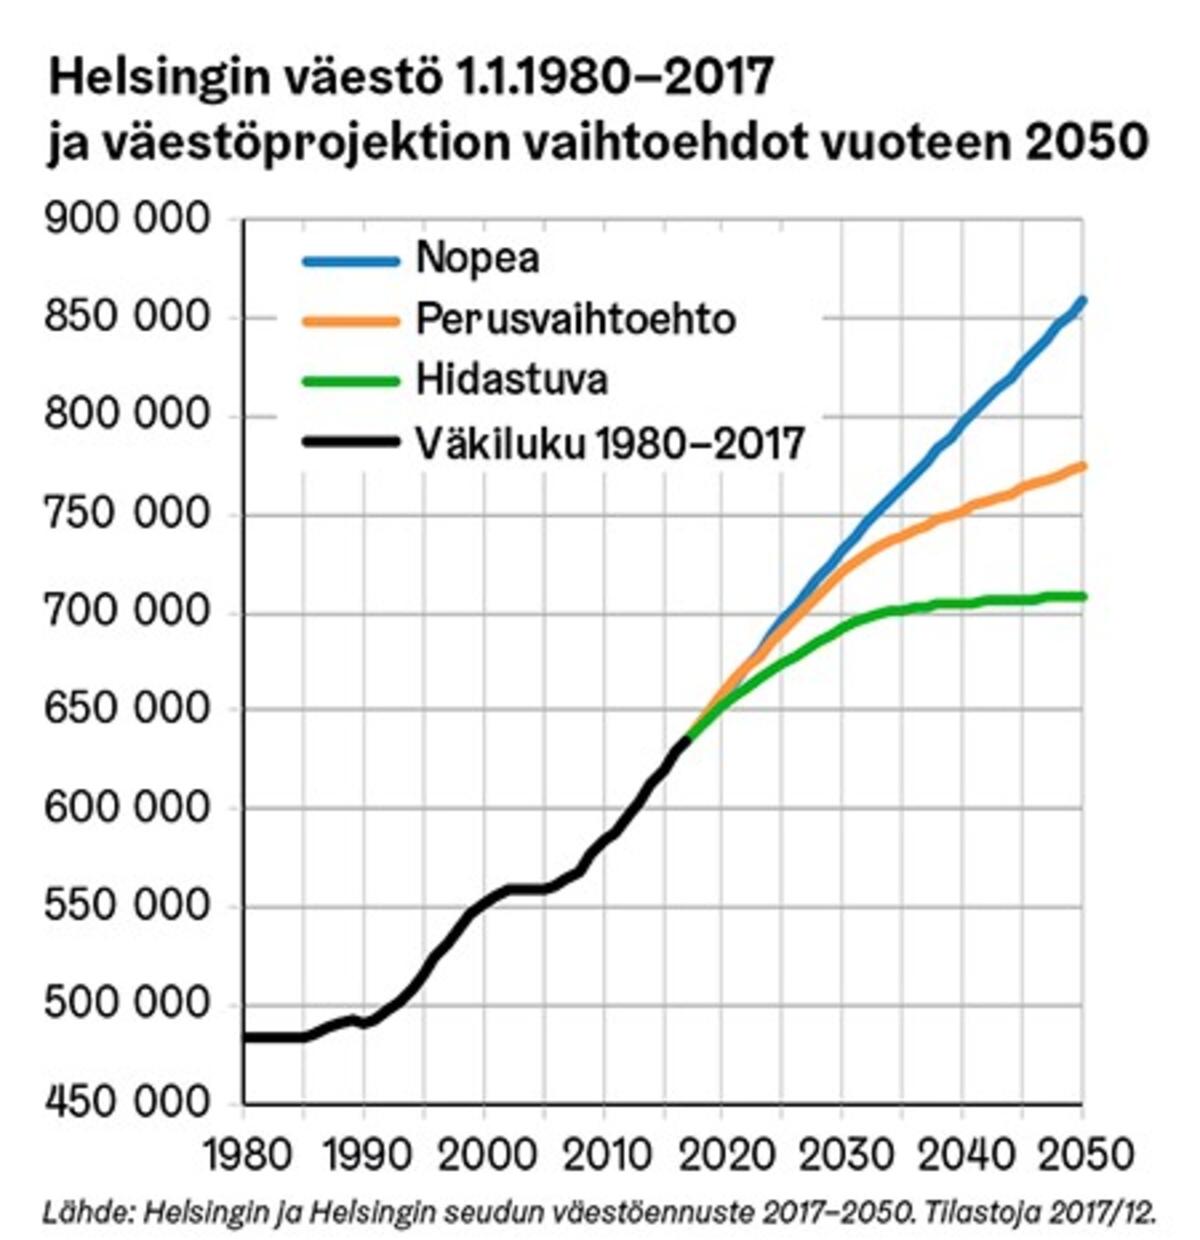 Folkmängden i Helsingfors 1980–2017 samt befolkningsprognosens alternativ fram till 2050. Oavsett vilket alternativ som förverkligas, kommer befolkningsutvecklingen i Helsingfors inte att vända nedåt under de närmaste årtiondena. Foto: Helsingfors stad